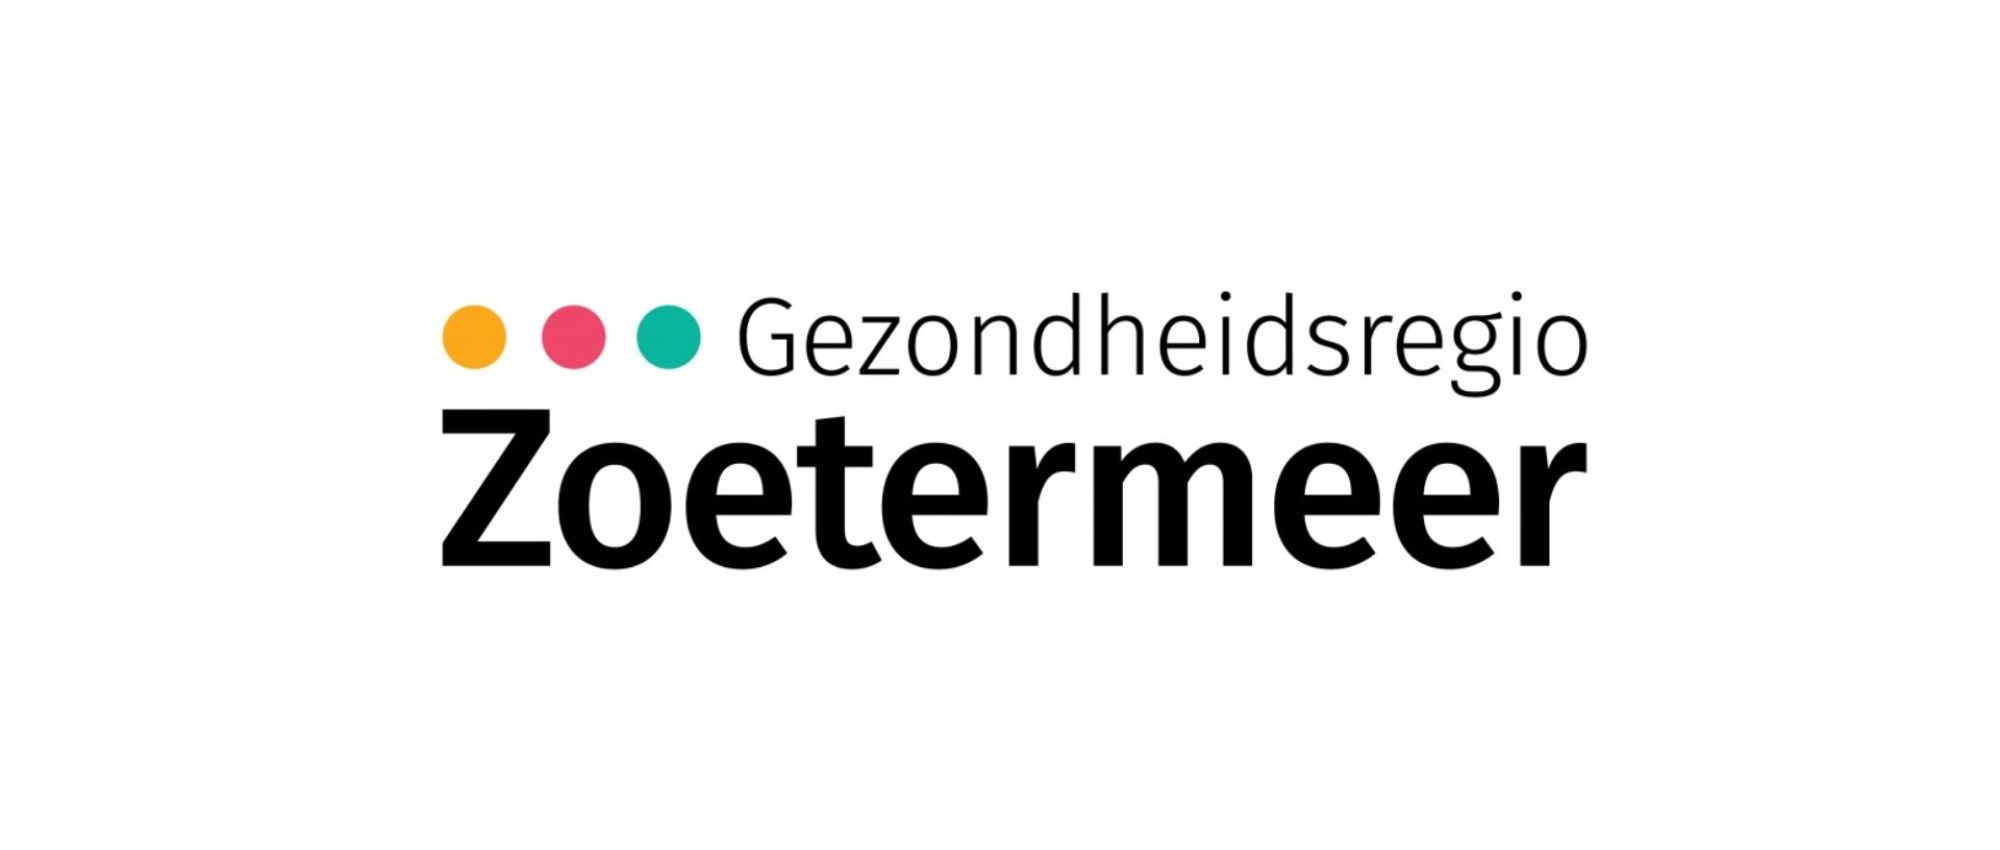 zoetermeer 2025